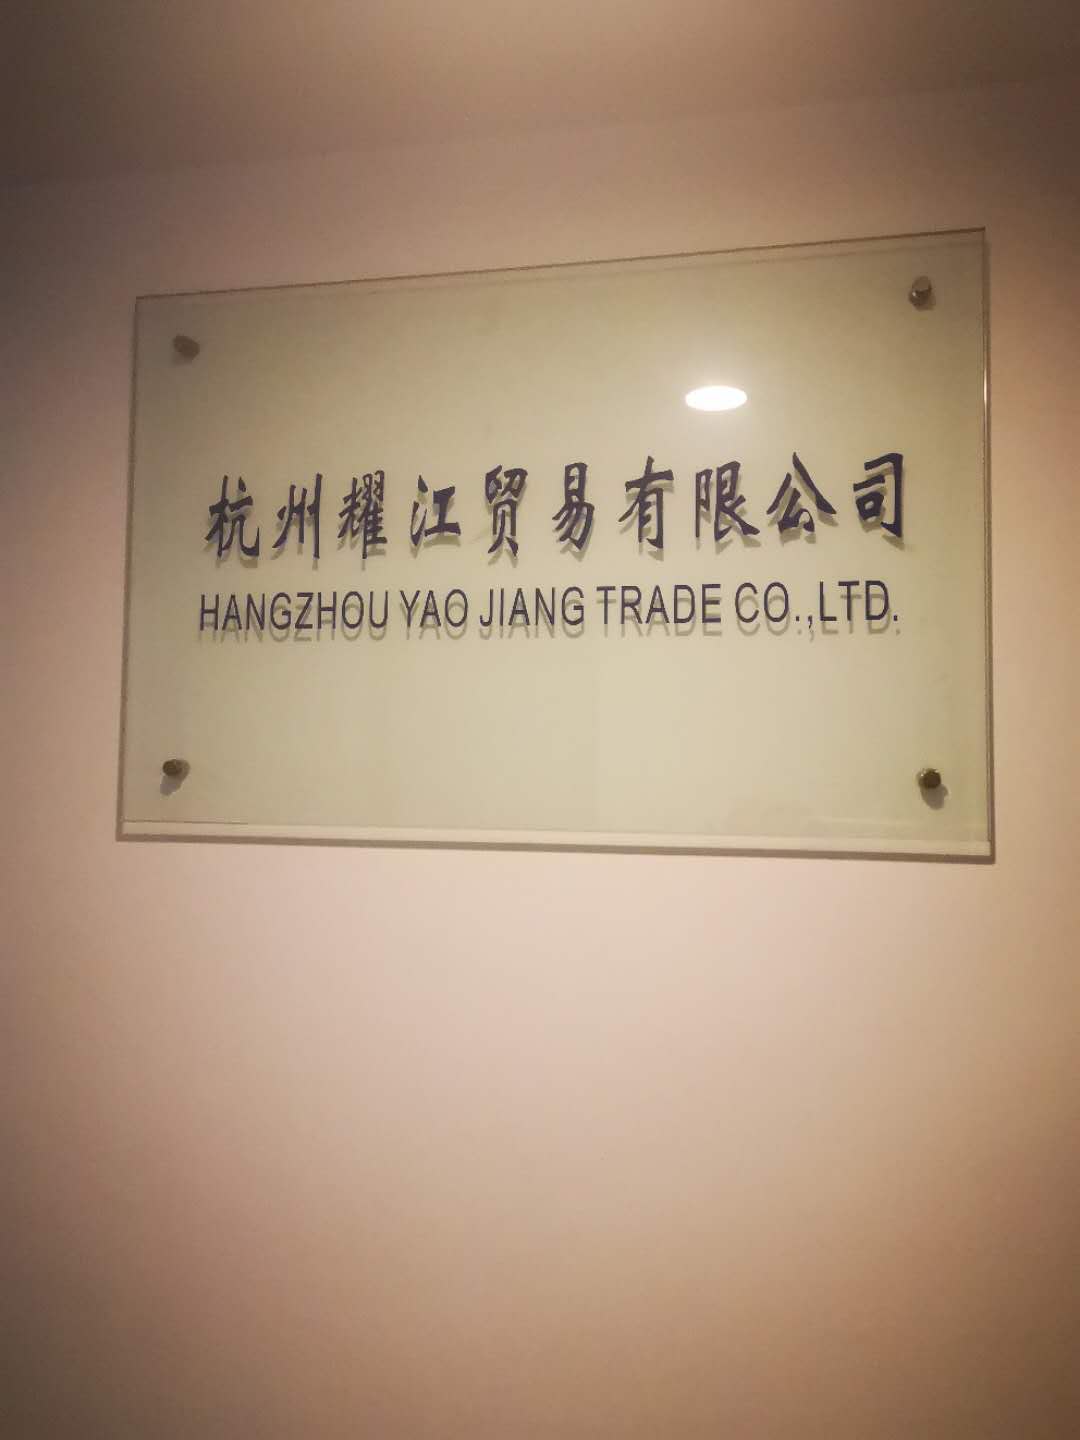 HANGZHOU YAOJIANG TRADE CO., LTD